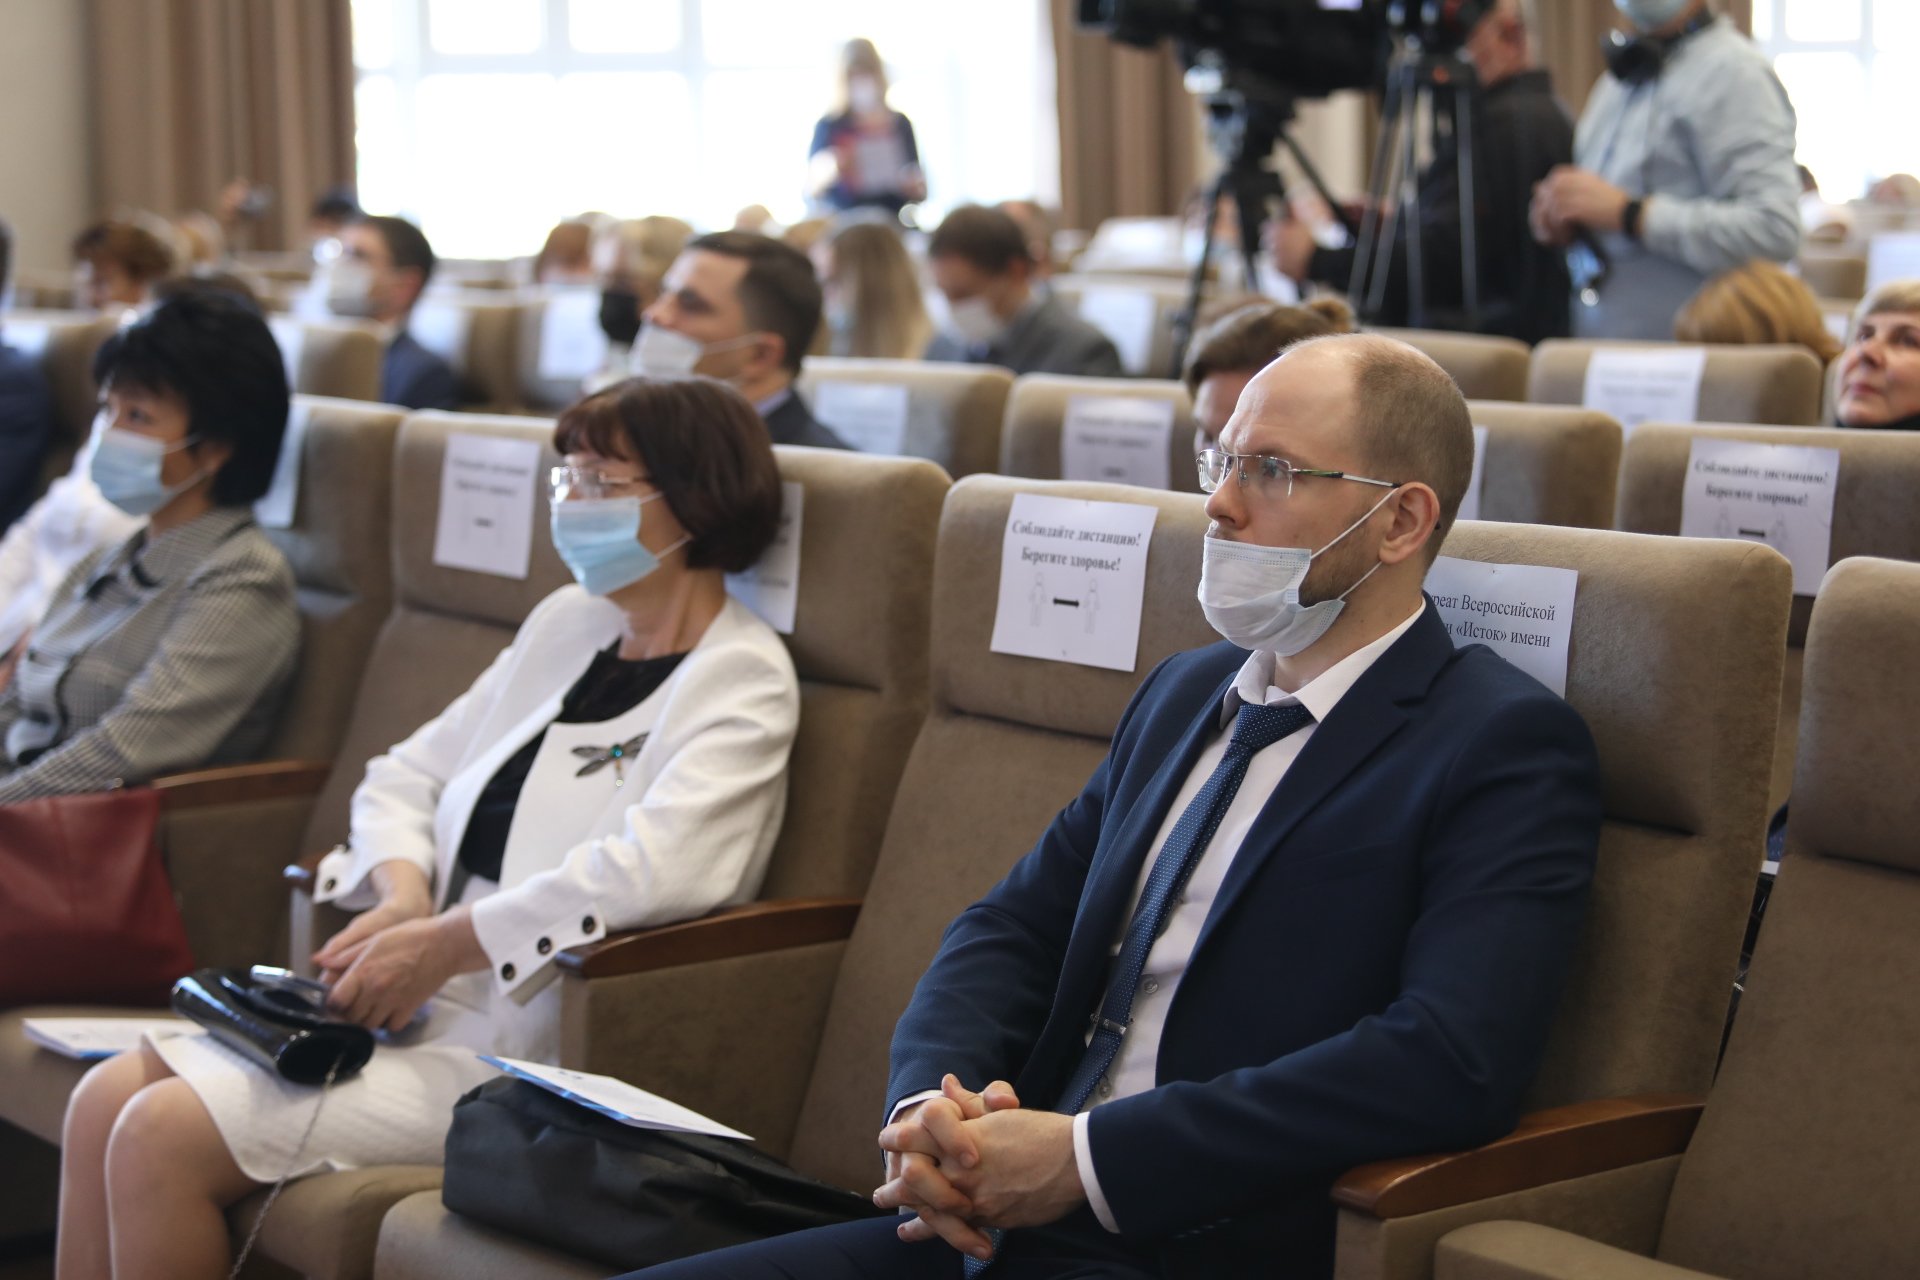 Всероссийский форум «Учитель и наука: практики, компетенции, достижения» прошел в Нижнем Новгороде